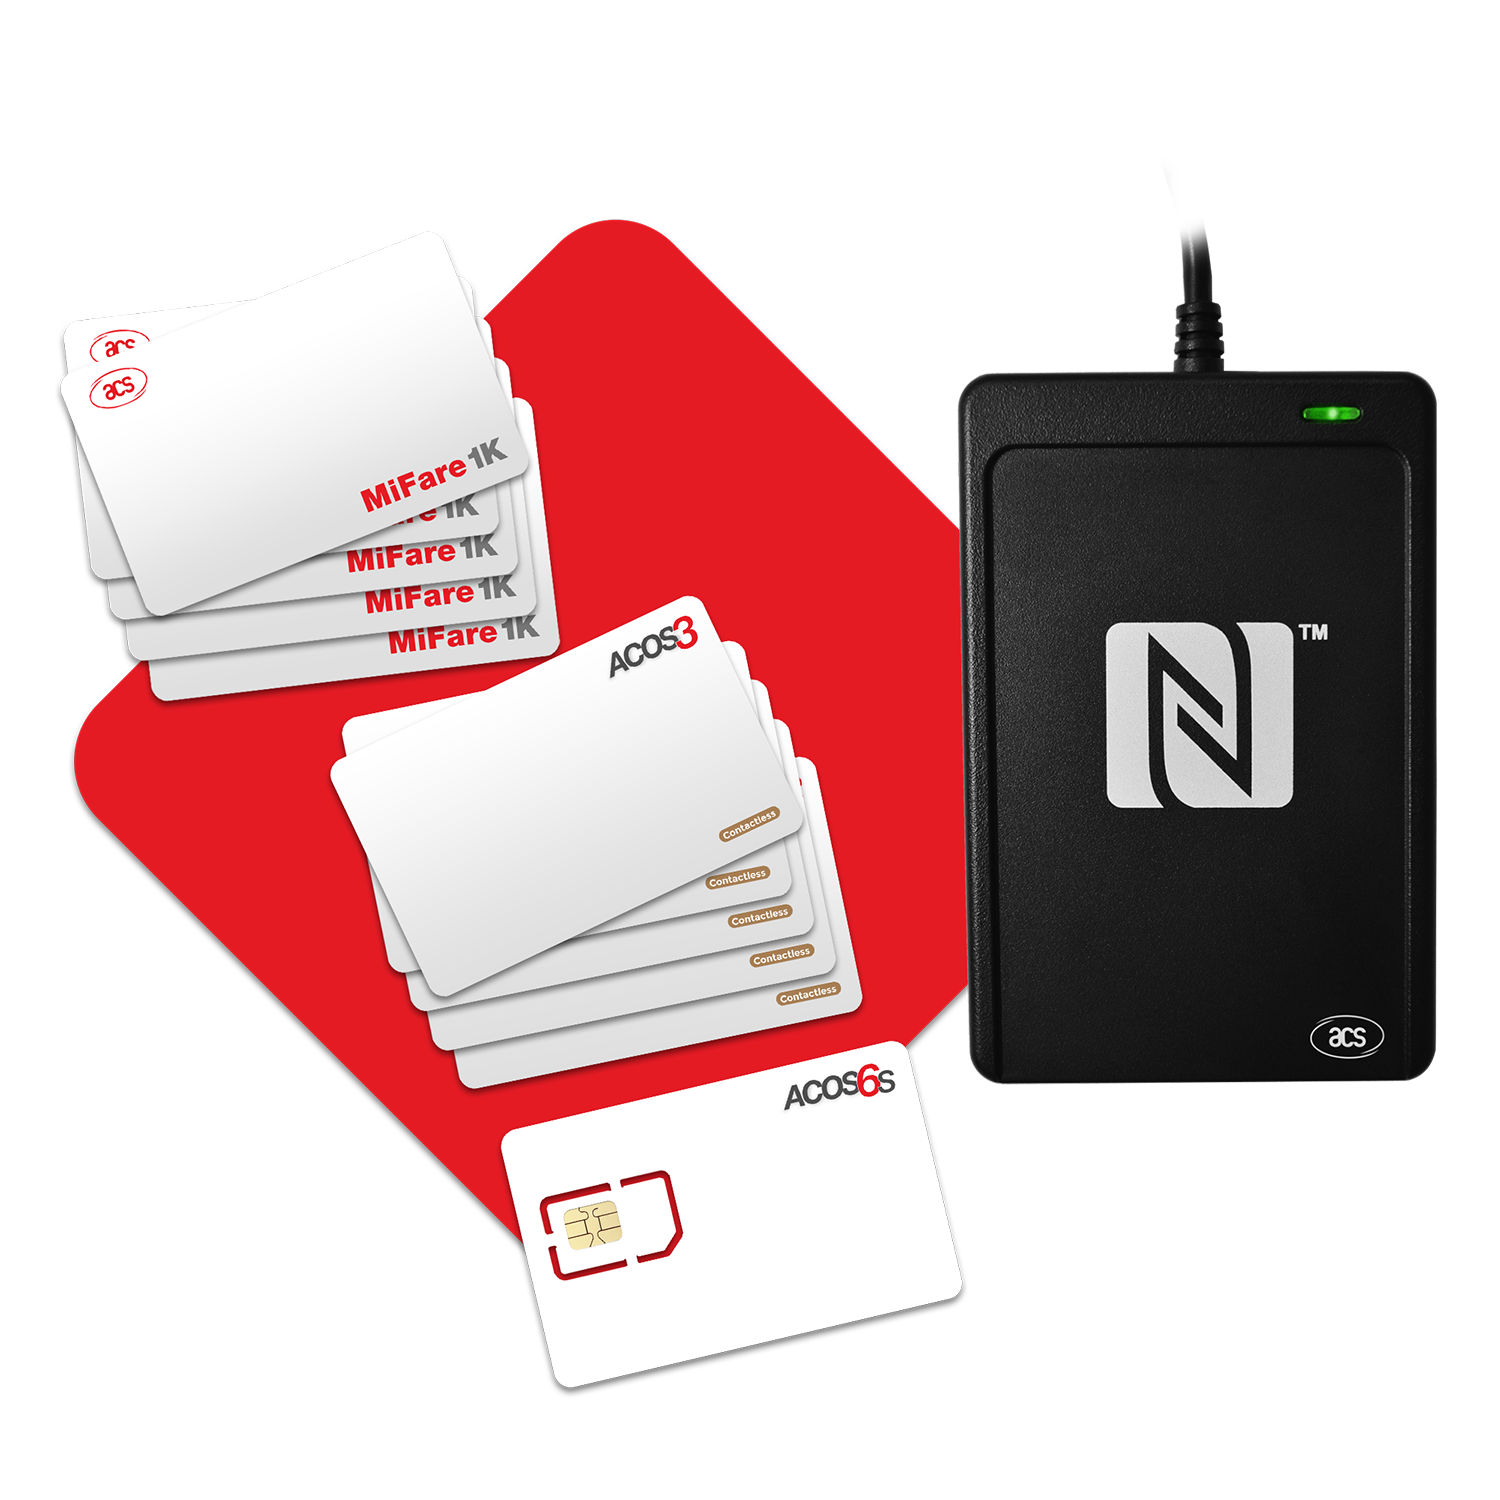 Nfc writer. Считыватель смарт-карт acr1252u-m1 ACS. NFC Reader. Считыватель настольный acr1252 USB. Acr1252u-m1 упаковка.